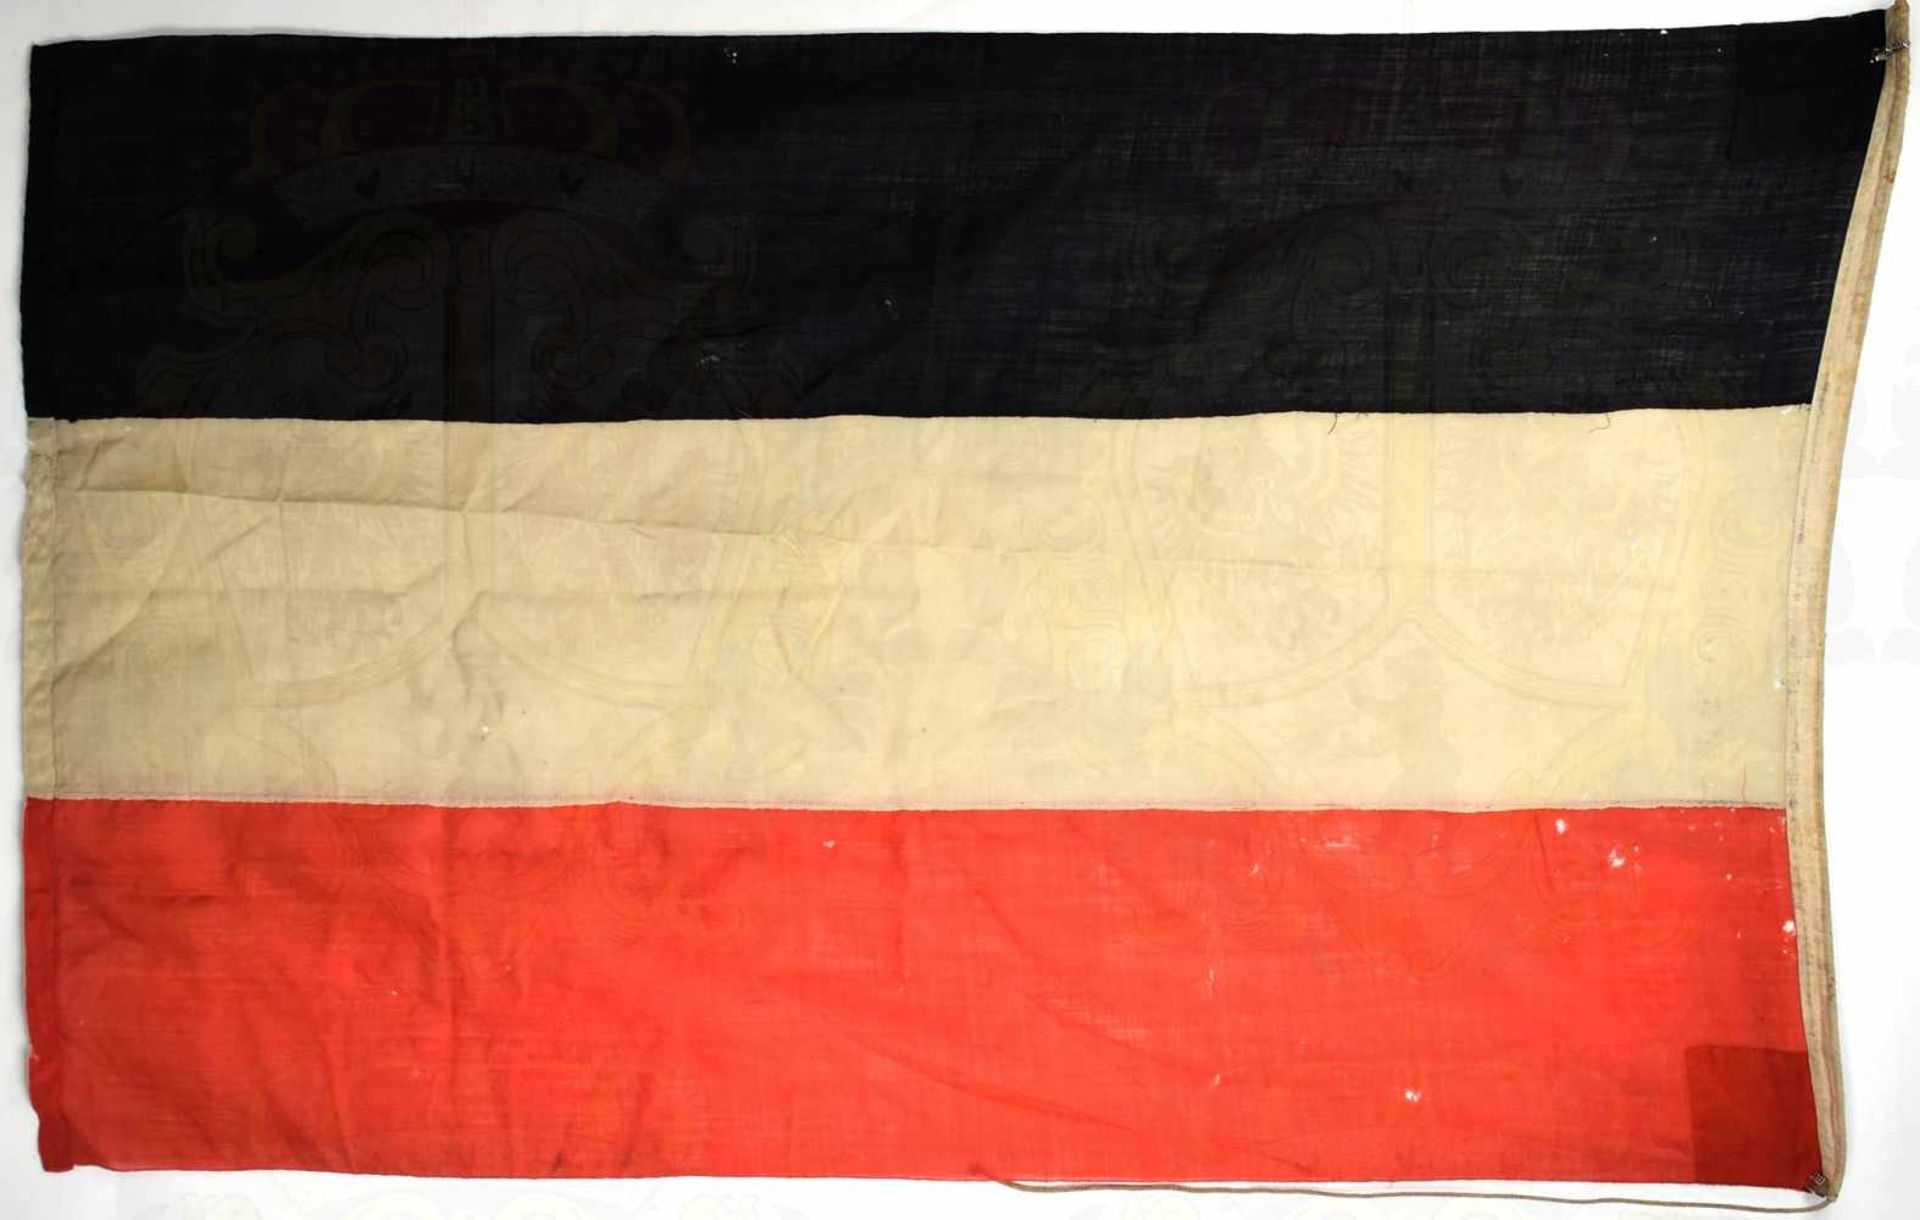 NATIONALFLAGGE FÜR HANDELSSCHIFFE, schwarz/weiß/roten Leinen, 3 zusammengenähte Bahnen, Liek m. - Bild 2 aus 2